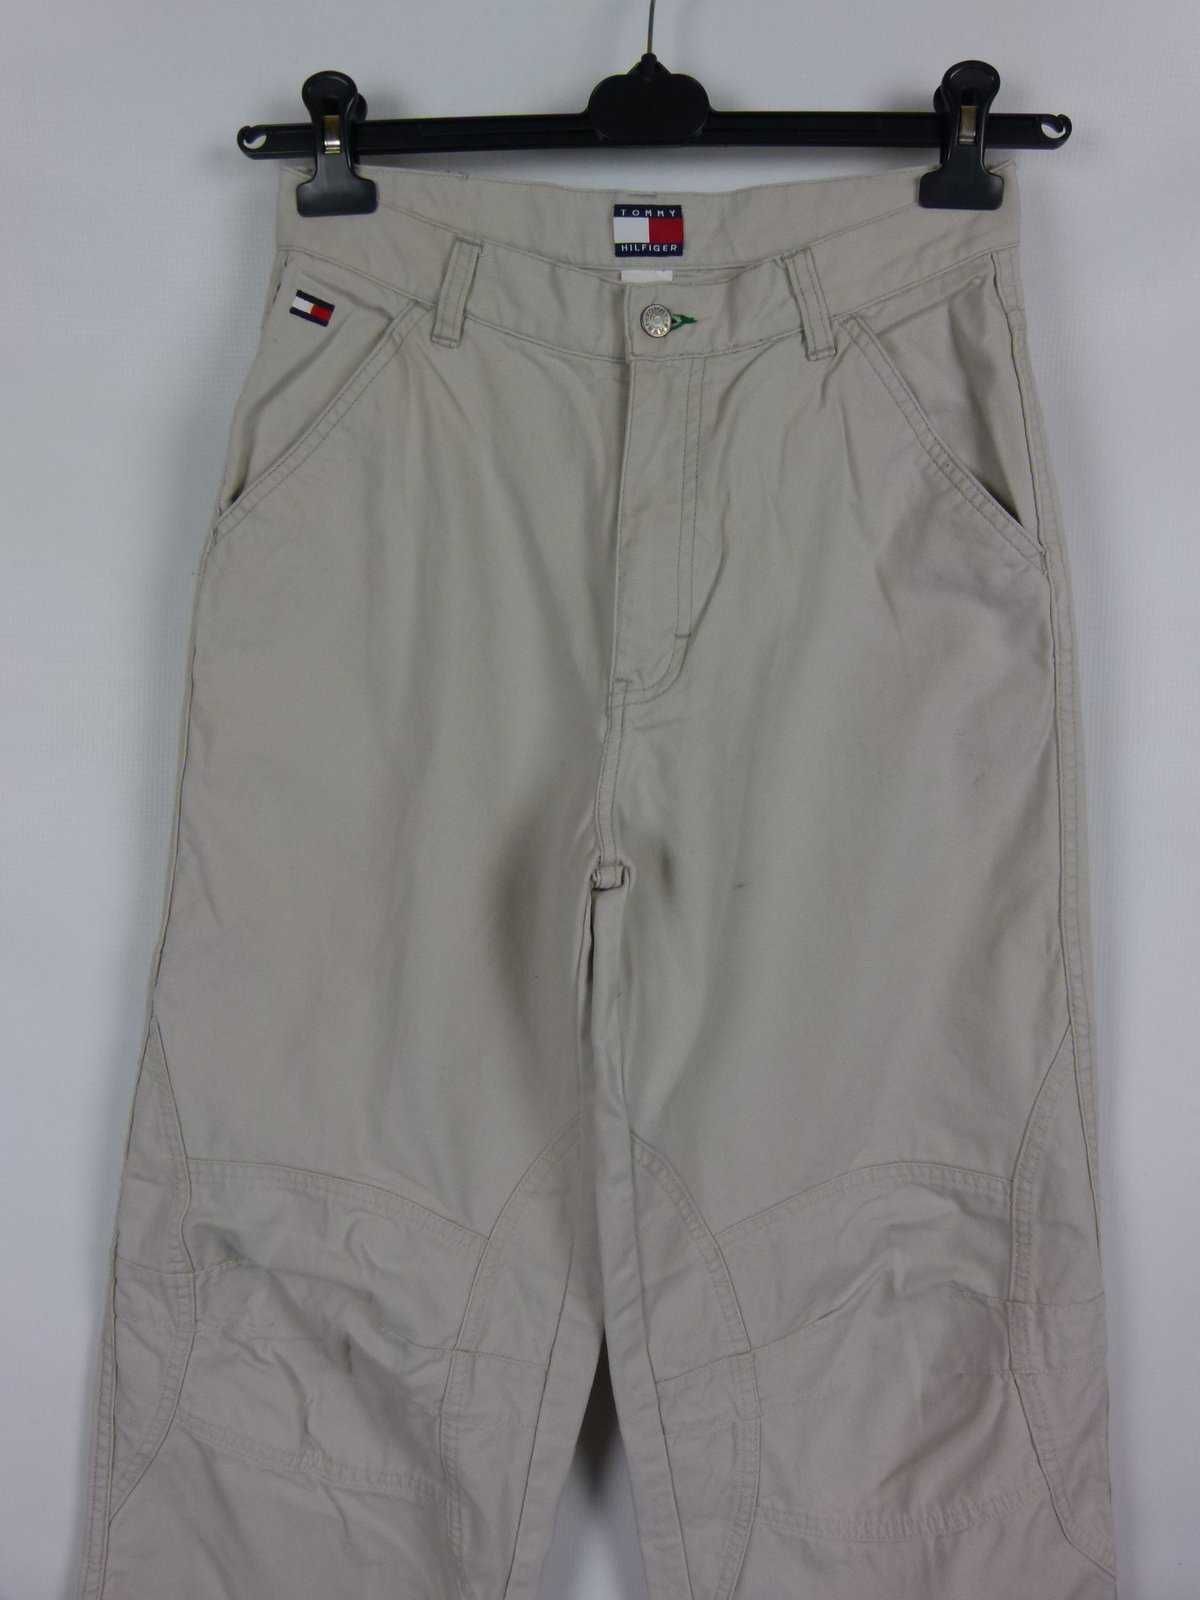 Tommy Hilfiger spodnie vintage bawełna / 18 - S